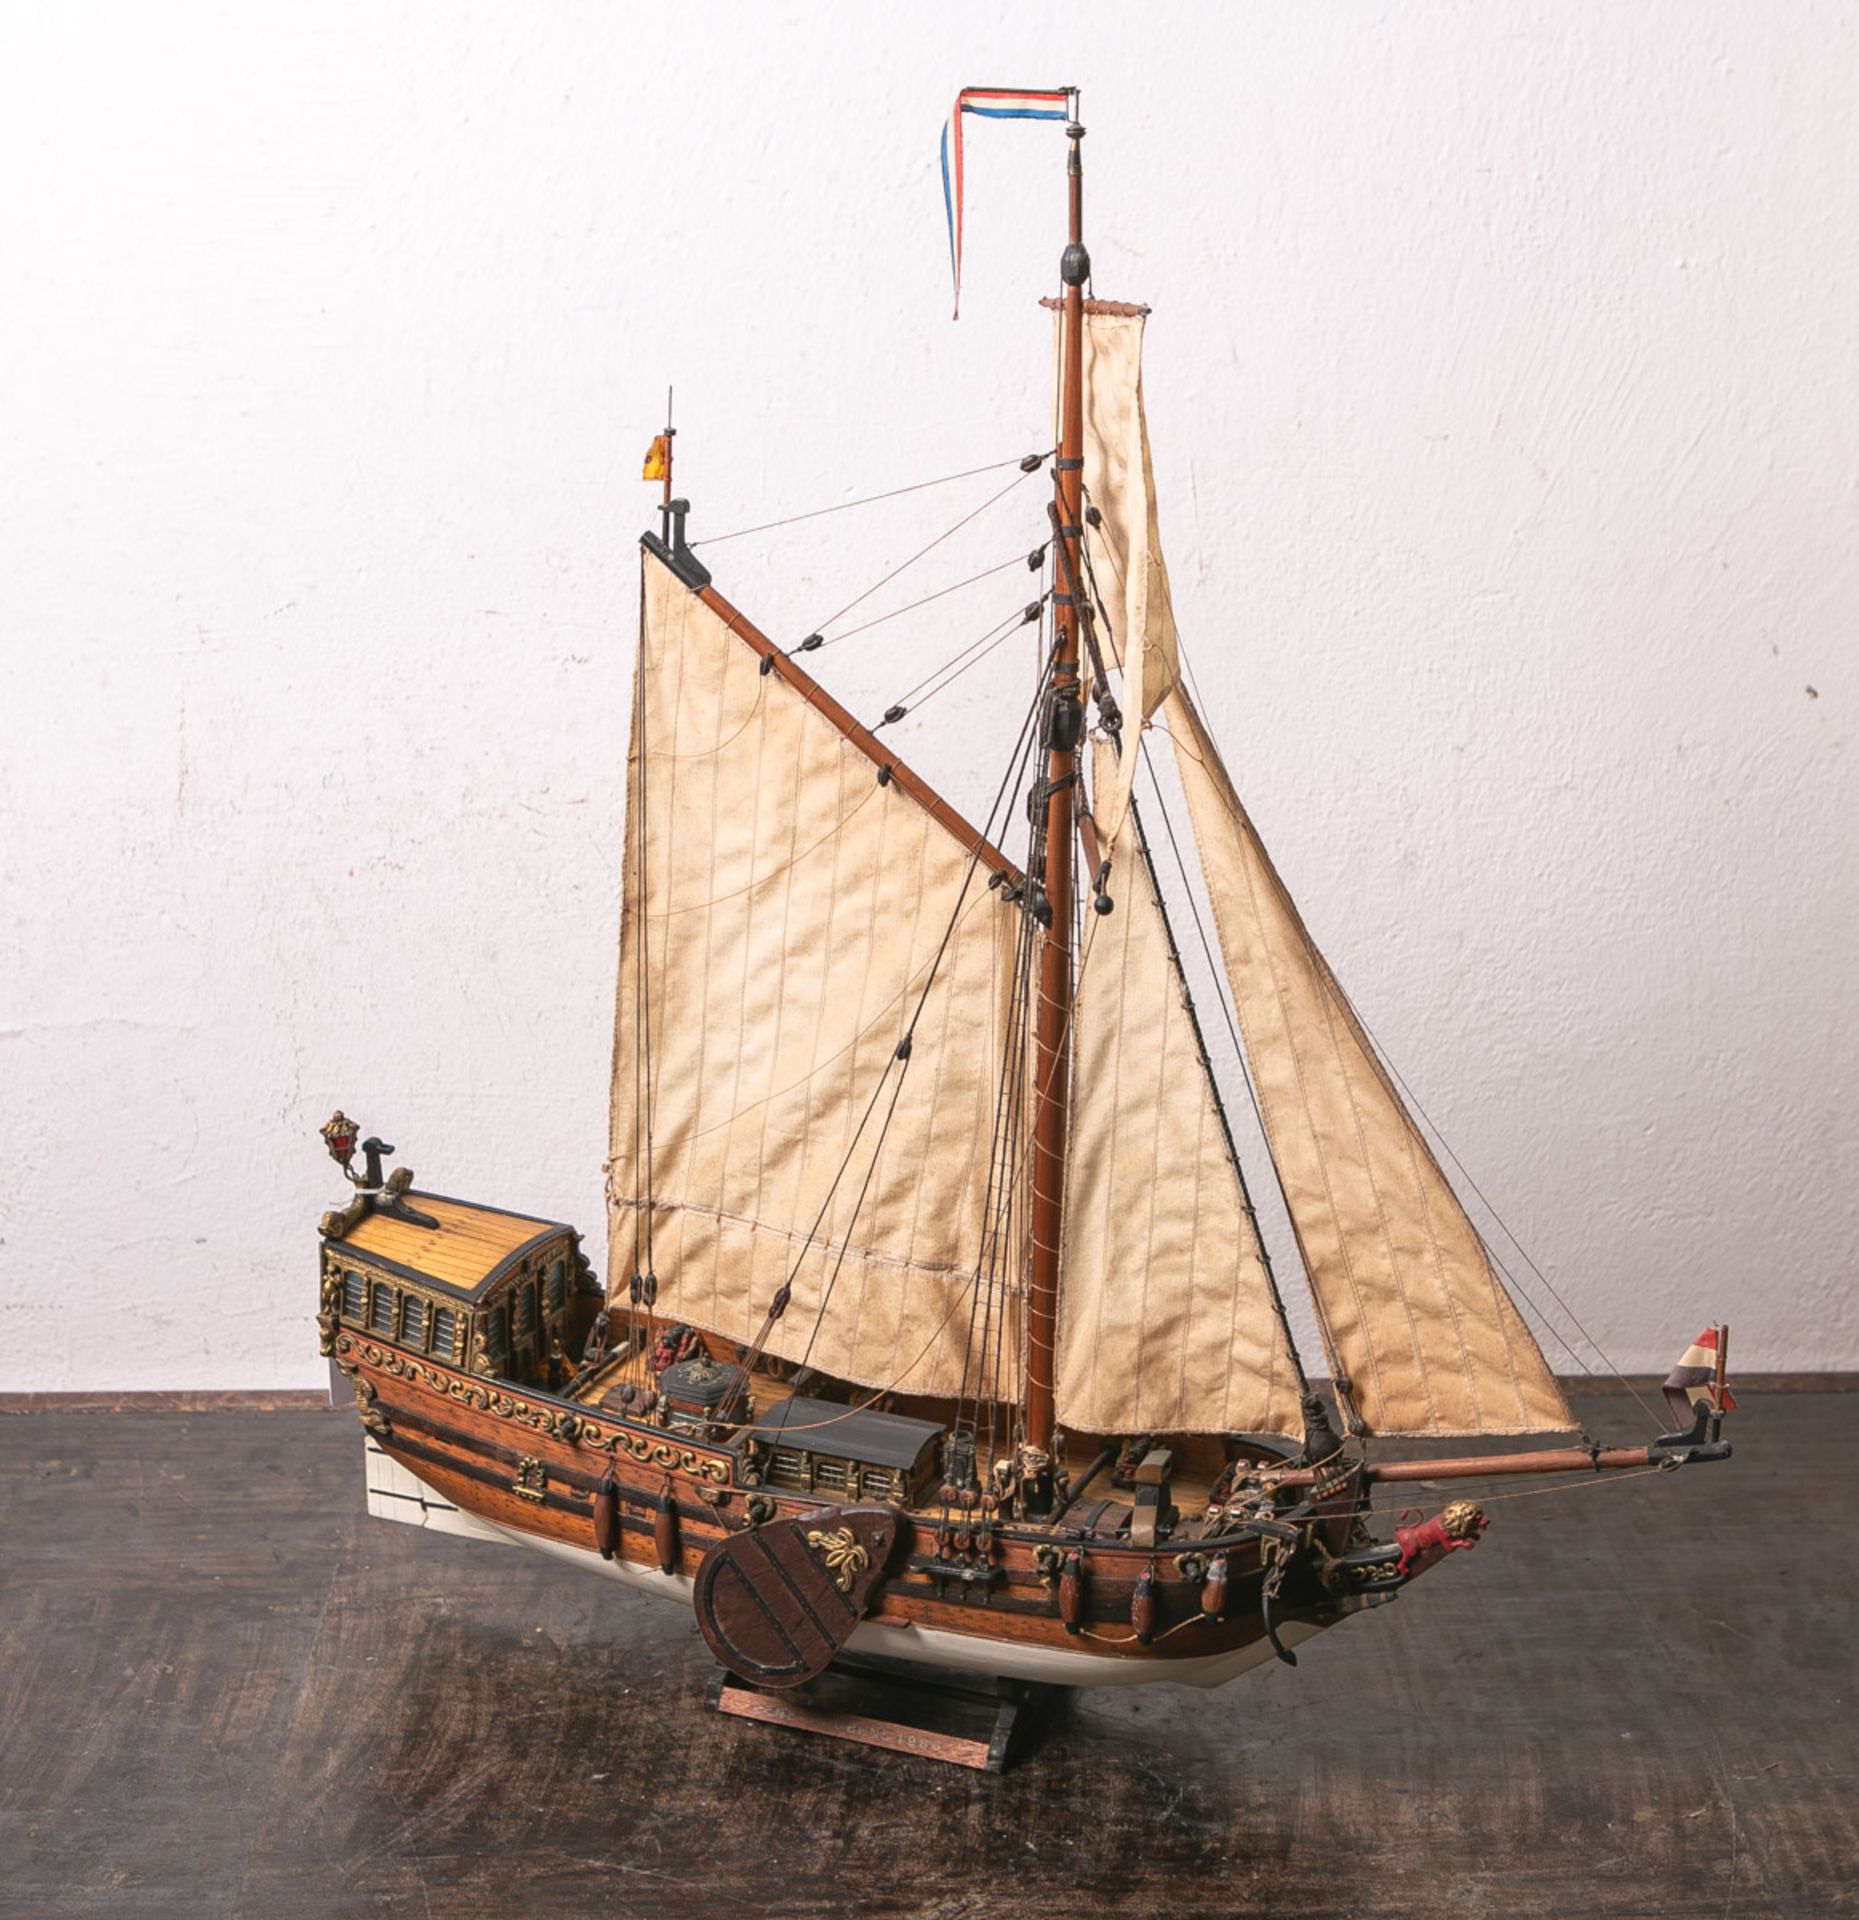 Modell eines niederländischen Segelschiffes "Statenjacht", ca. 67 x 60 x 13 cm, auf Sockel